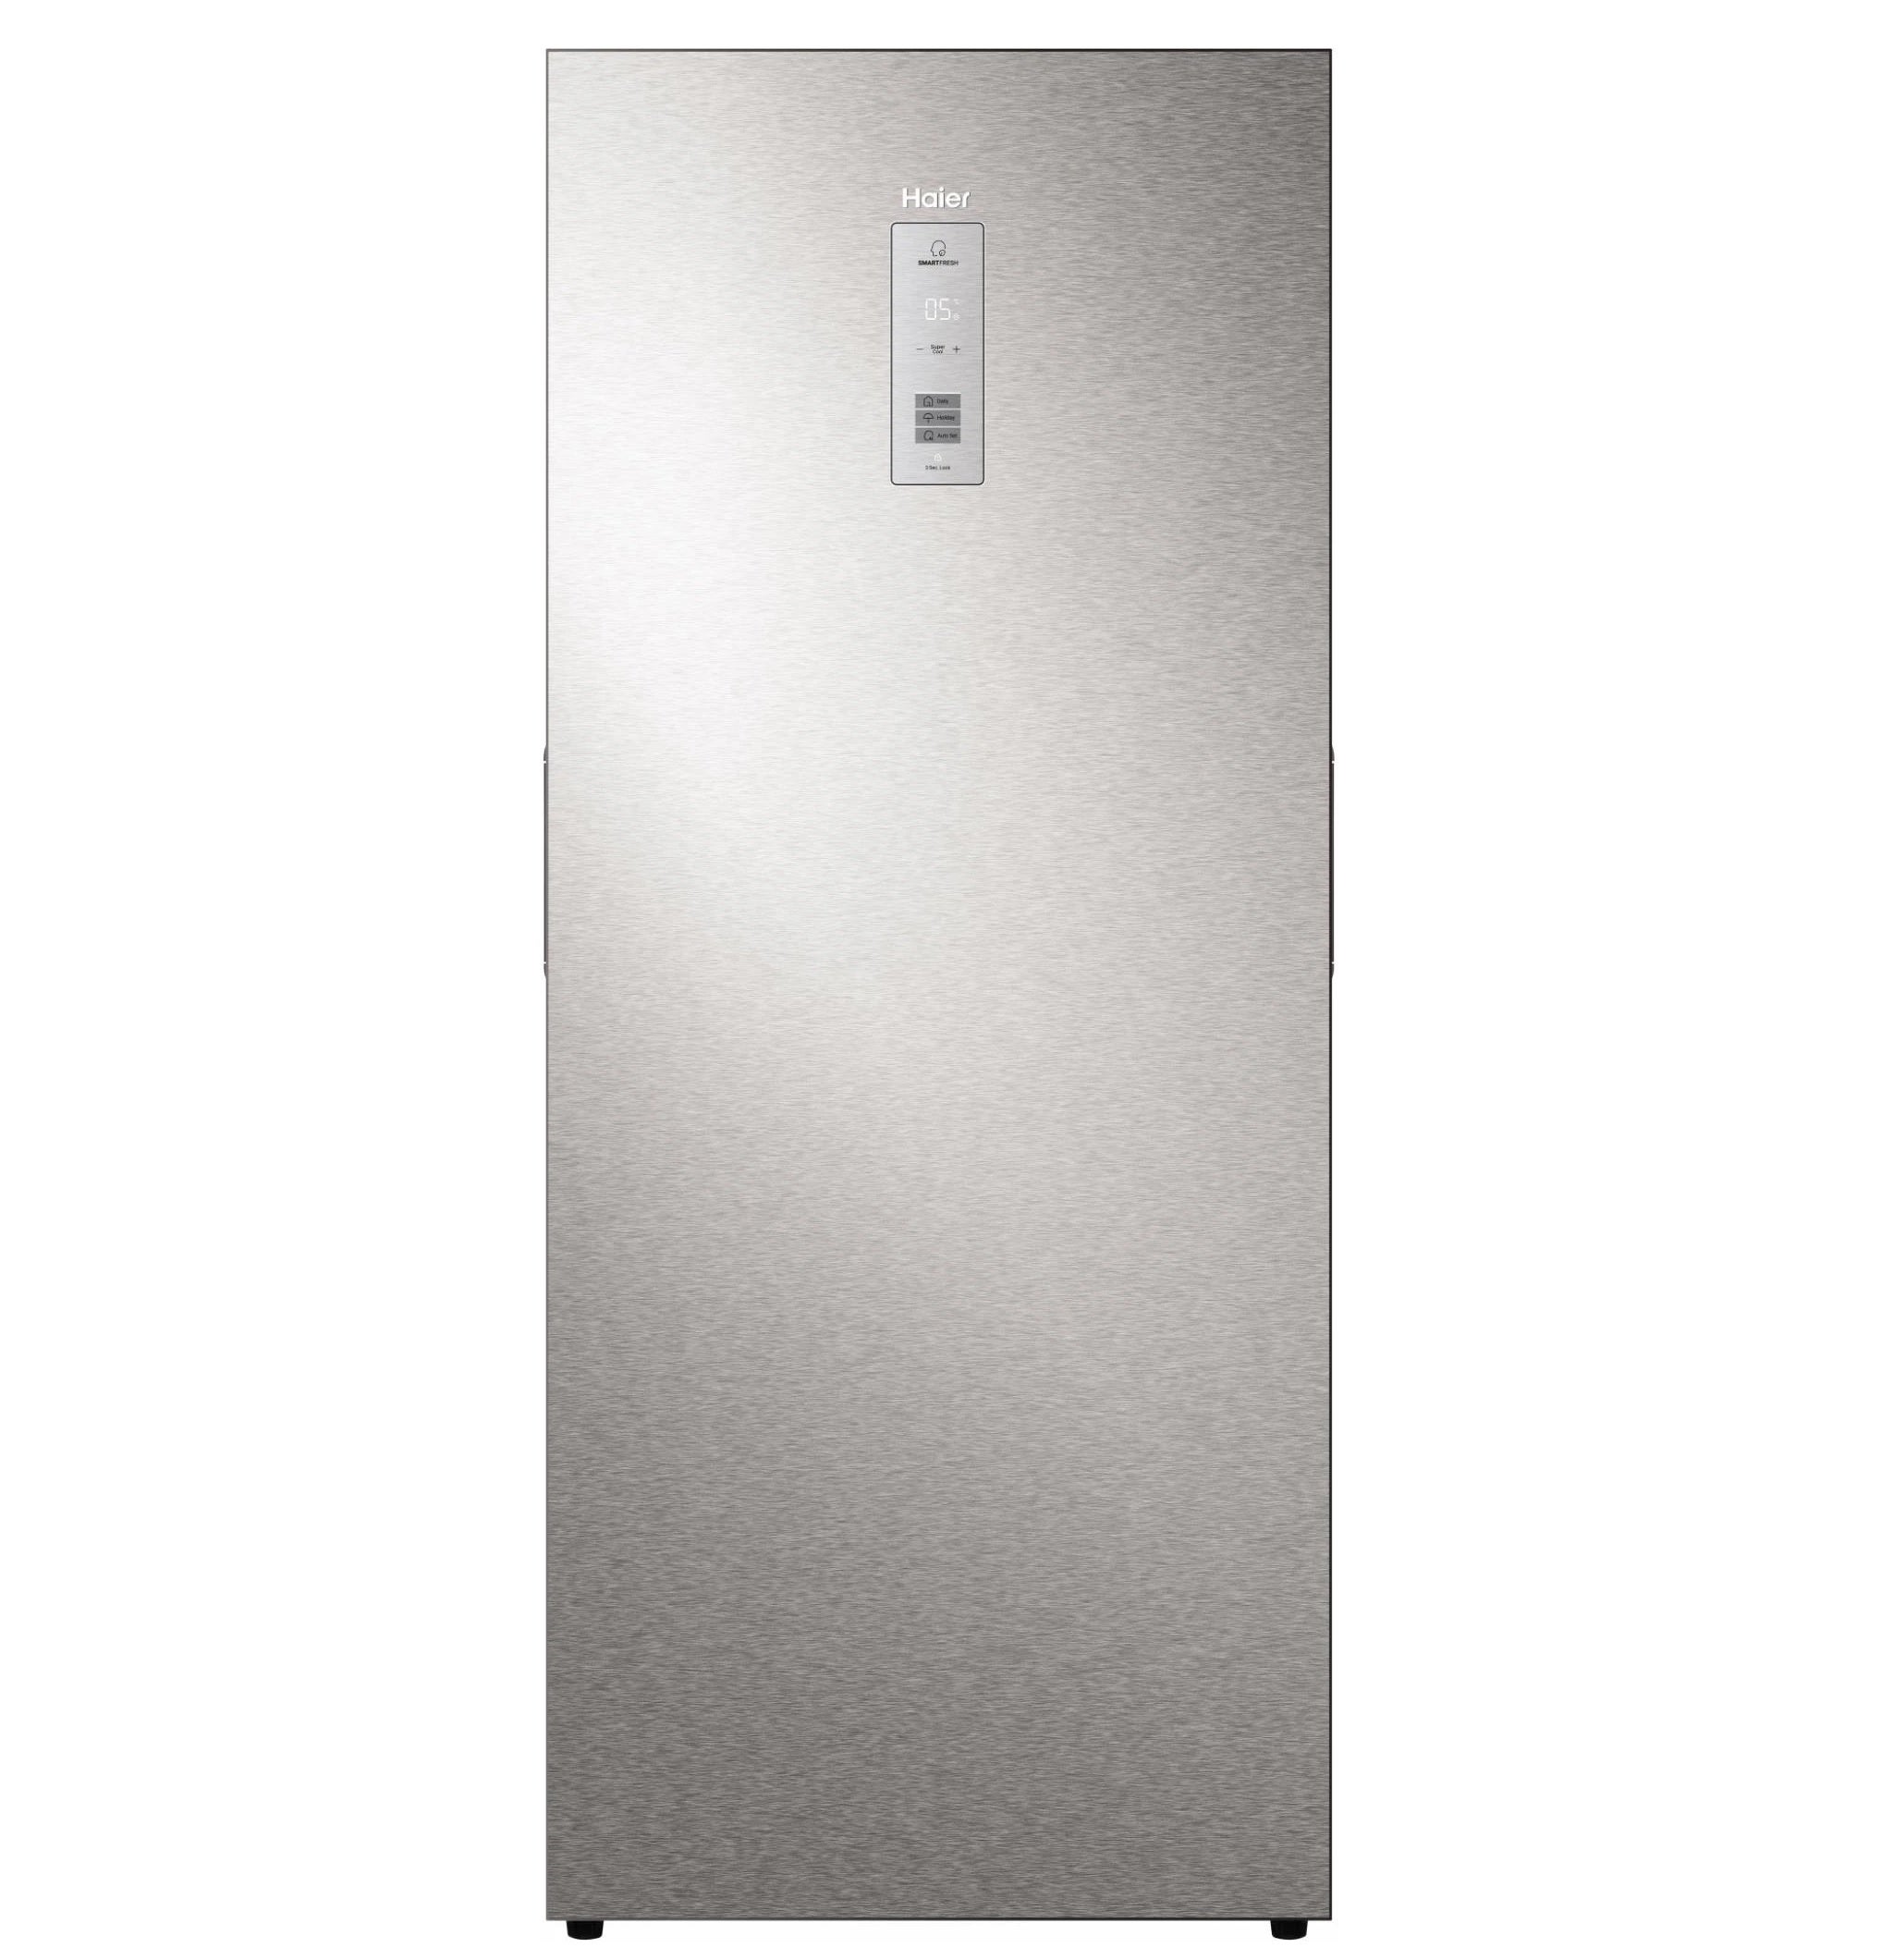 Haier HRF505V Refrigerator